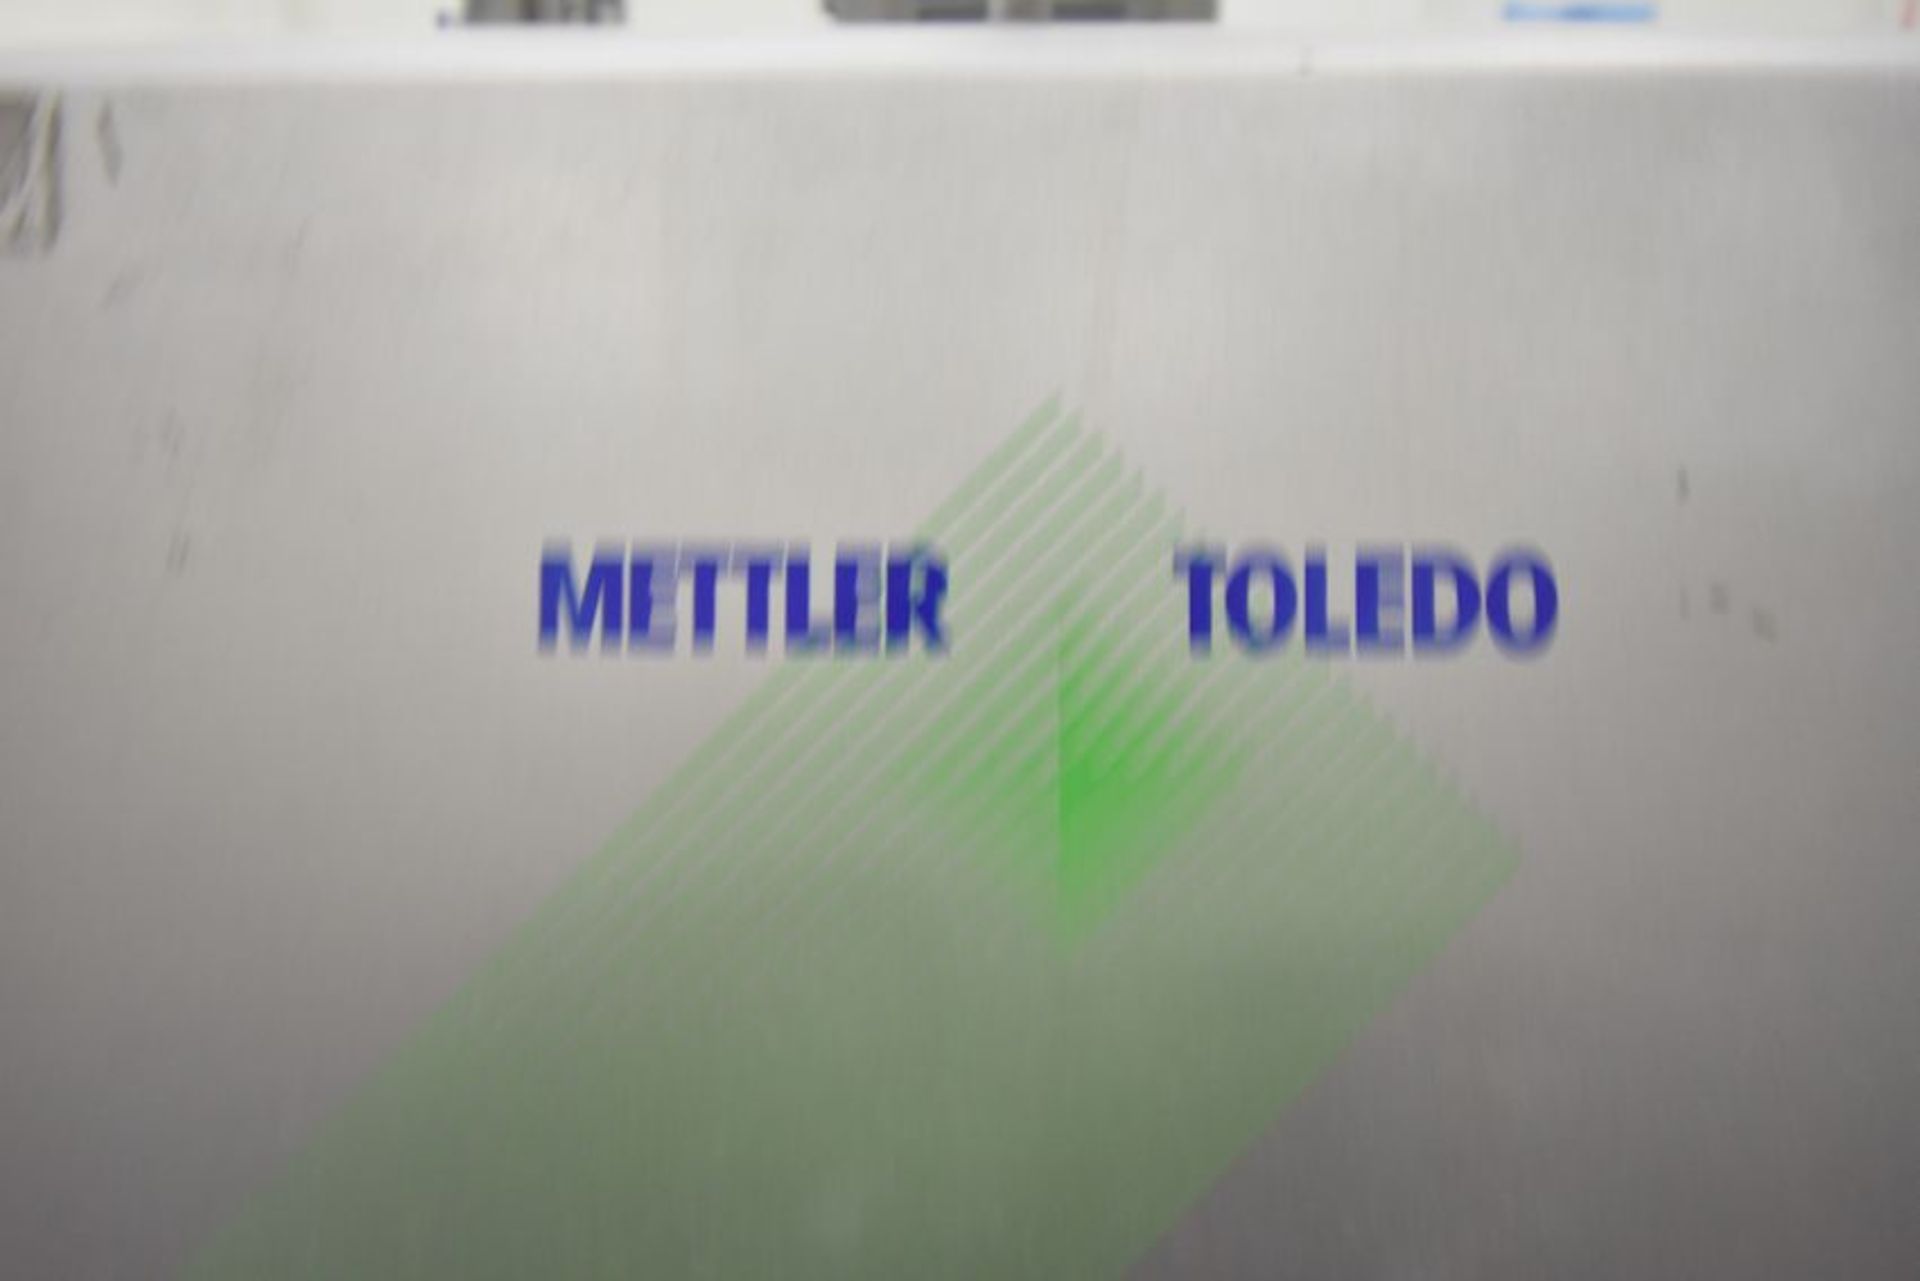 Mettler Toledo Smartchek X-ray | Mettler Toledo Smartchek 300 X-ray Machine. S/N X6424001. 110V, - Image 5 of 10